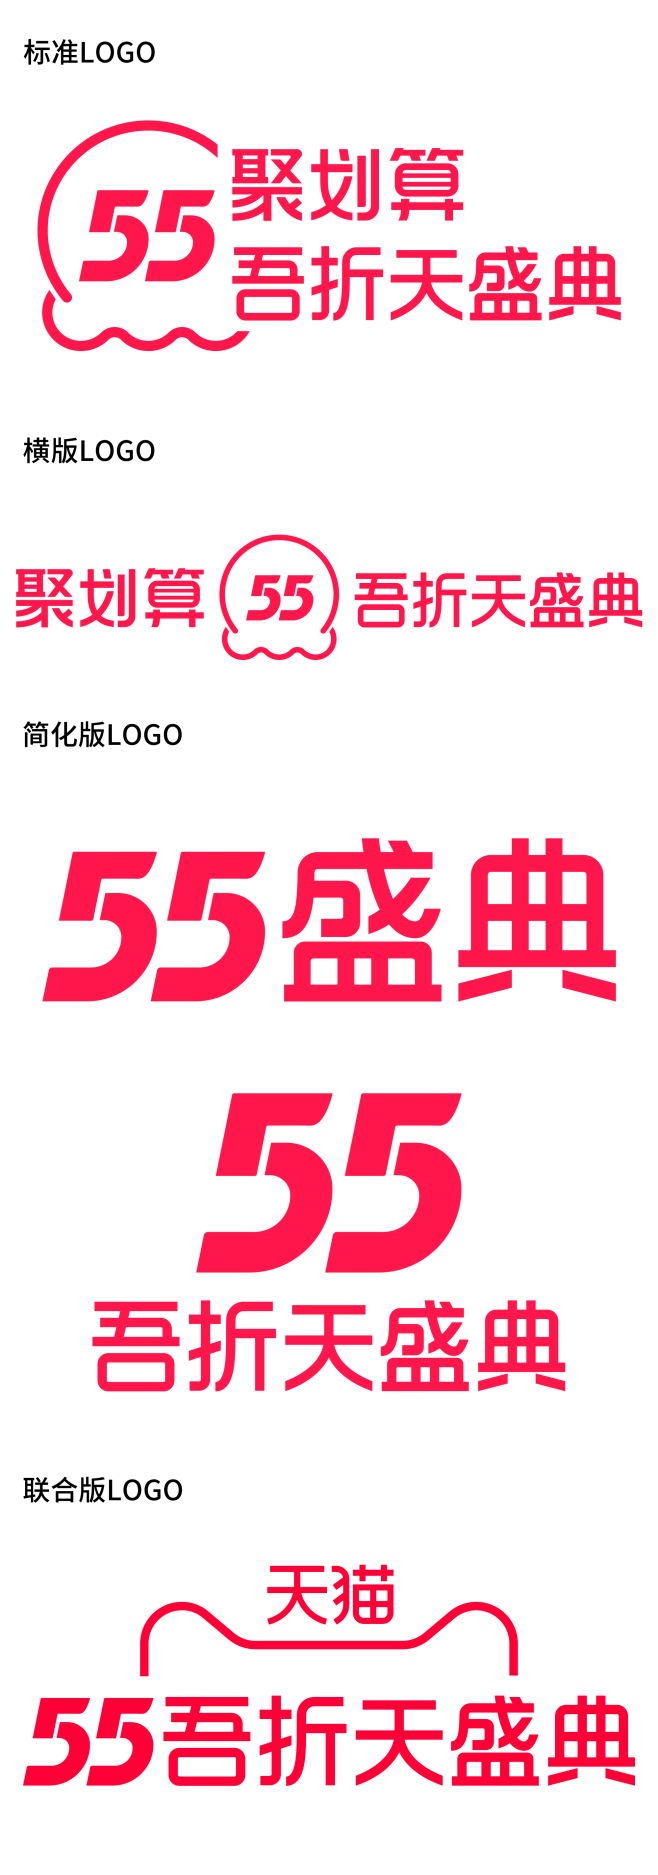 2021天猫聚划算55吾折天盛典logo...